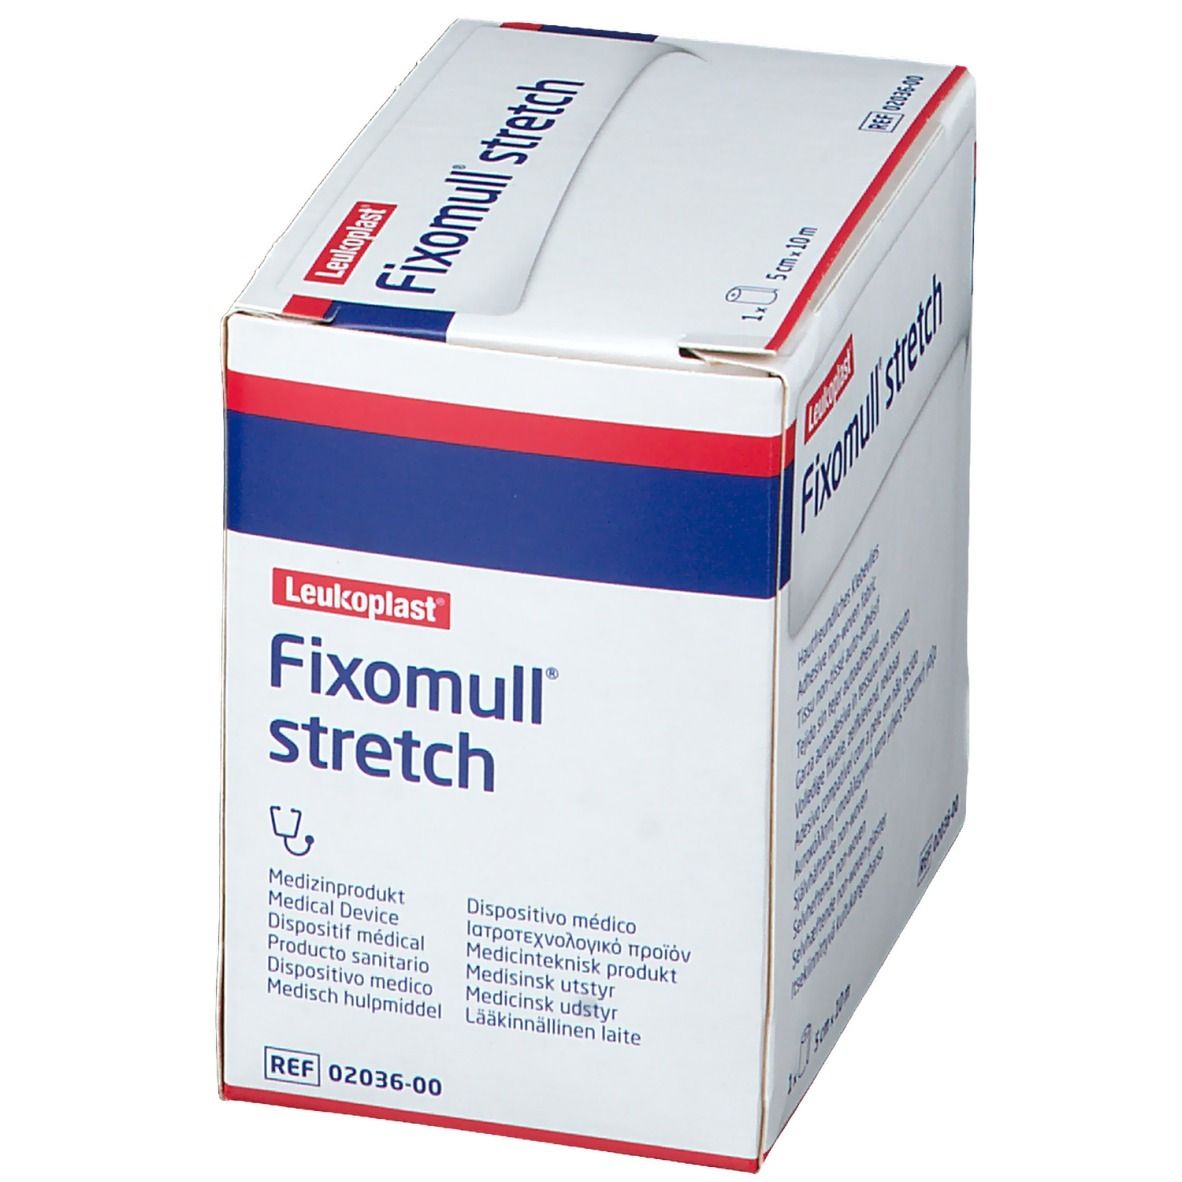 Fixomull® Stretch 5 cm x 10 m